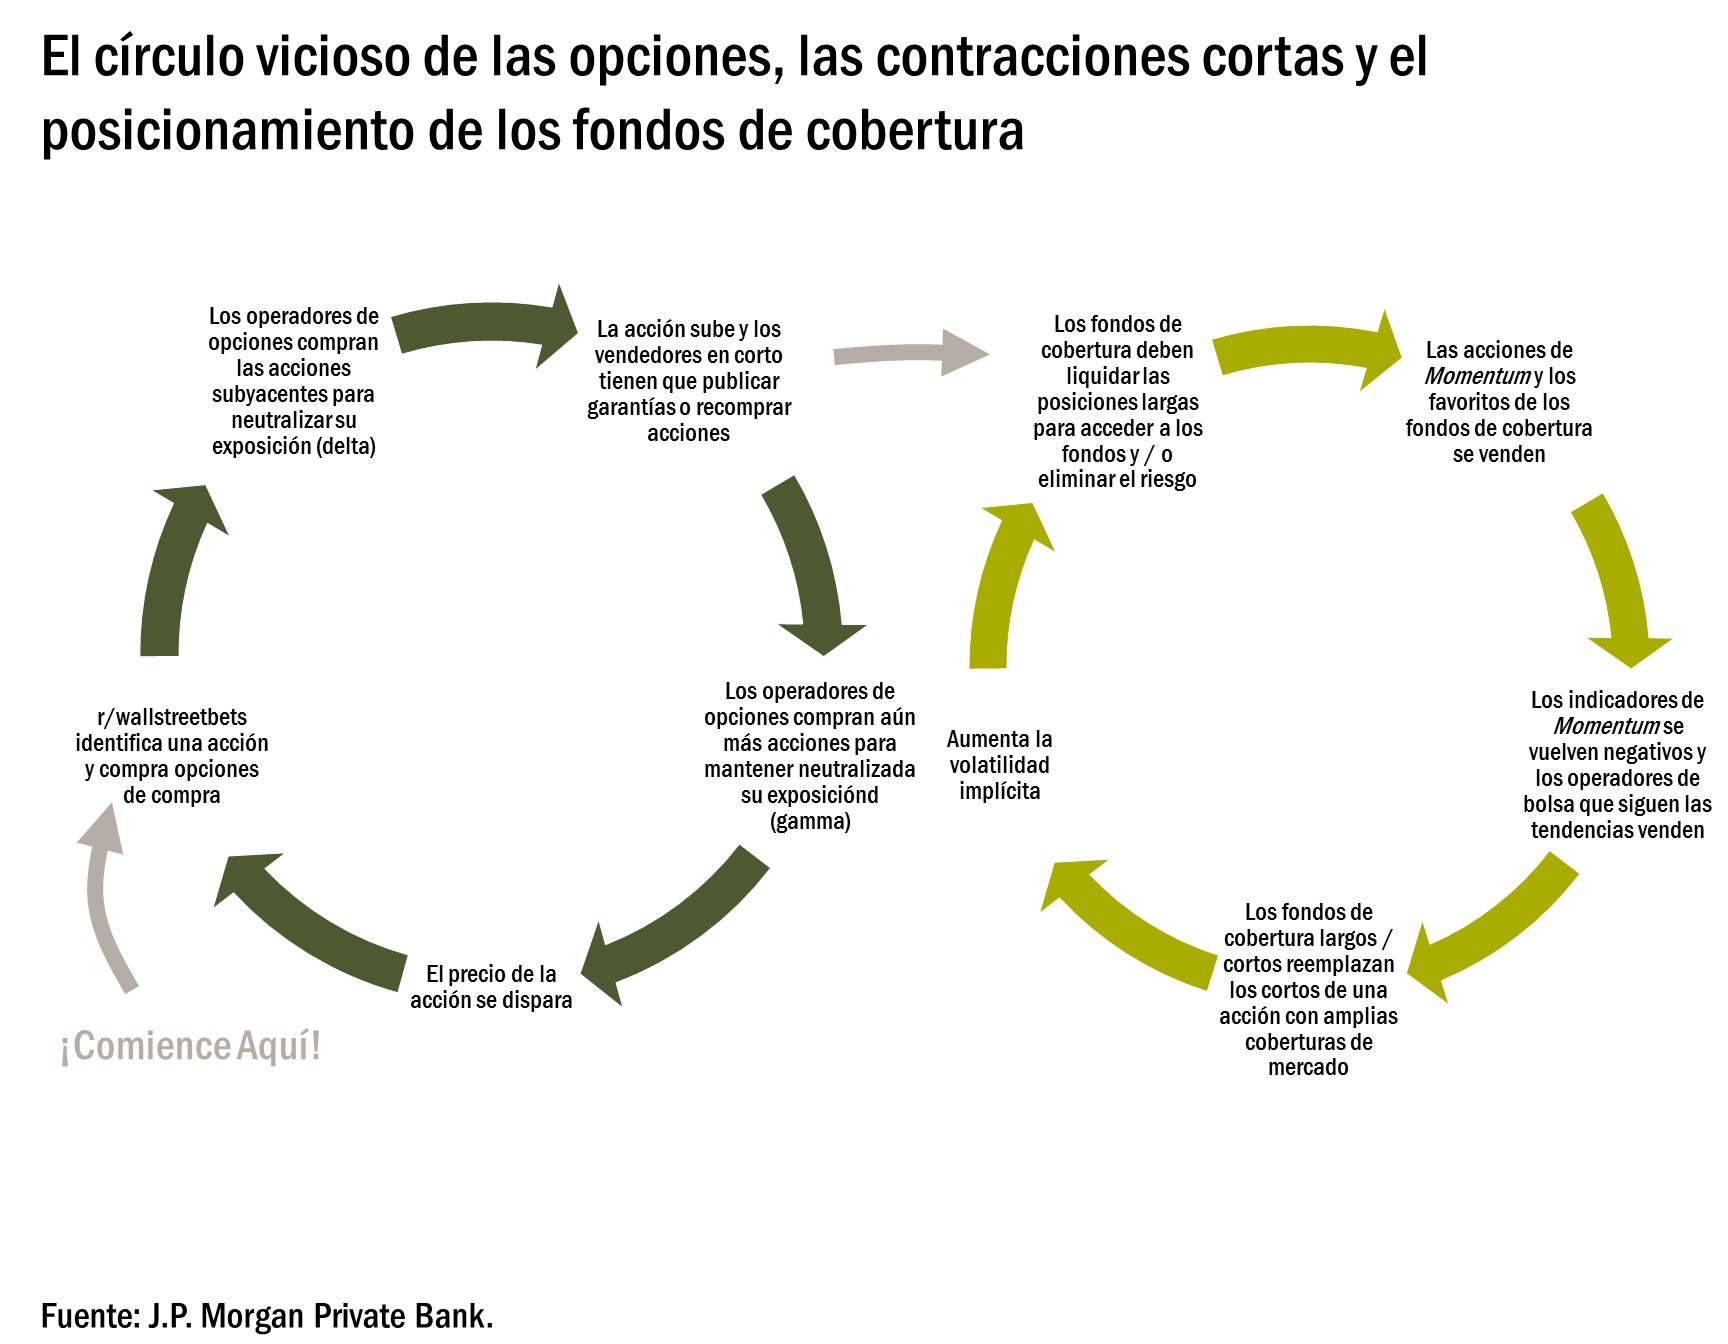 El gráfico muestra el ciclo de negociación de opciones, contracciones cortas y posicionamiento de fondos de cobertura.